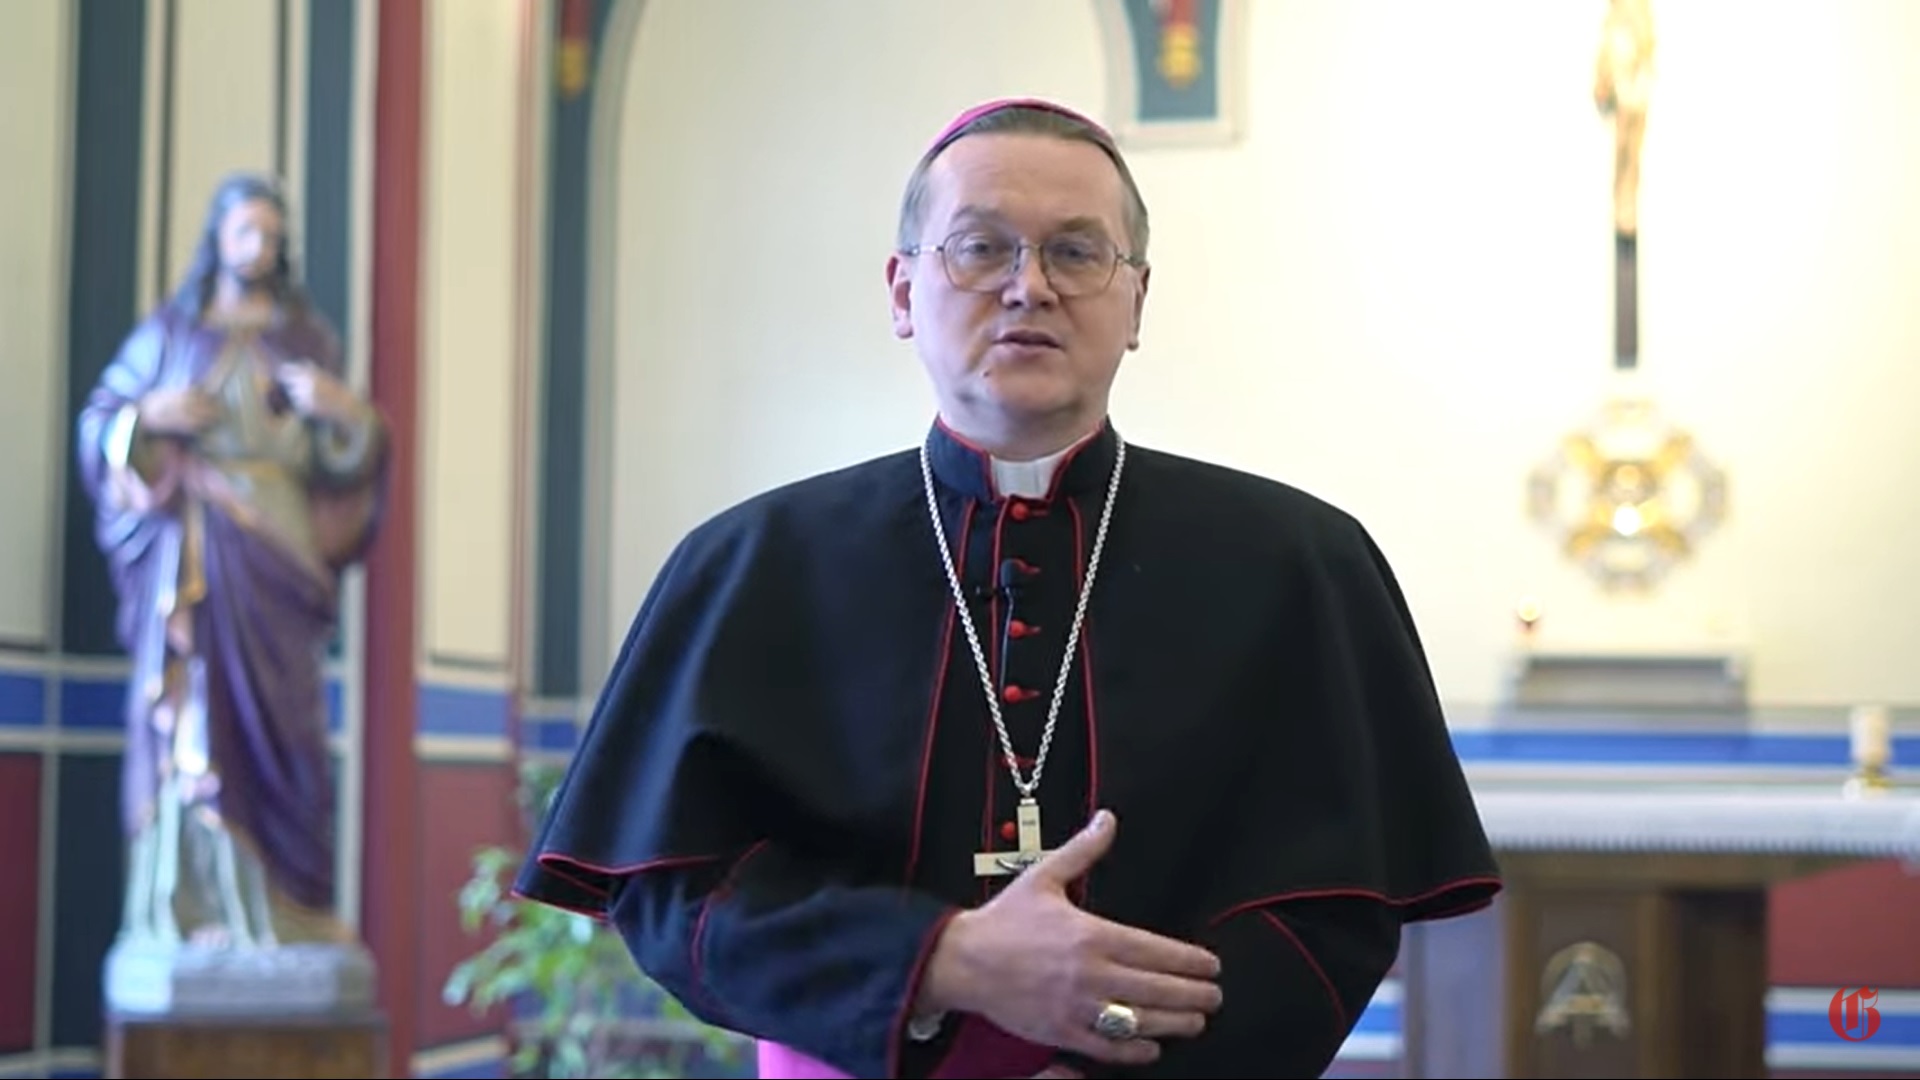 Епископ Дубинин призывает всех к молитве о мире 2 марта 2022